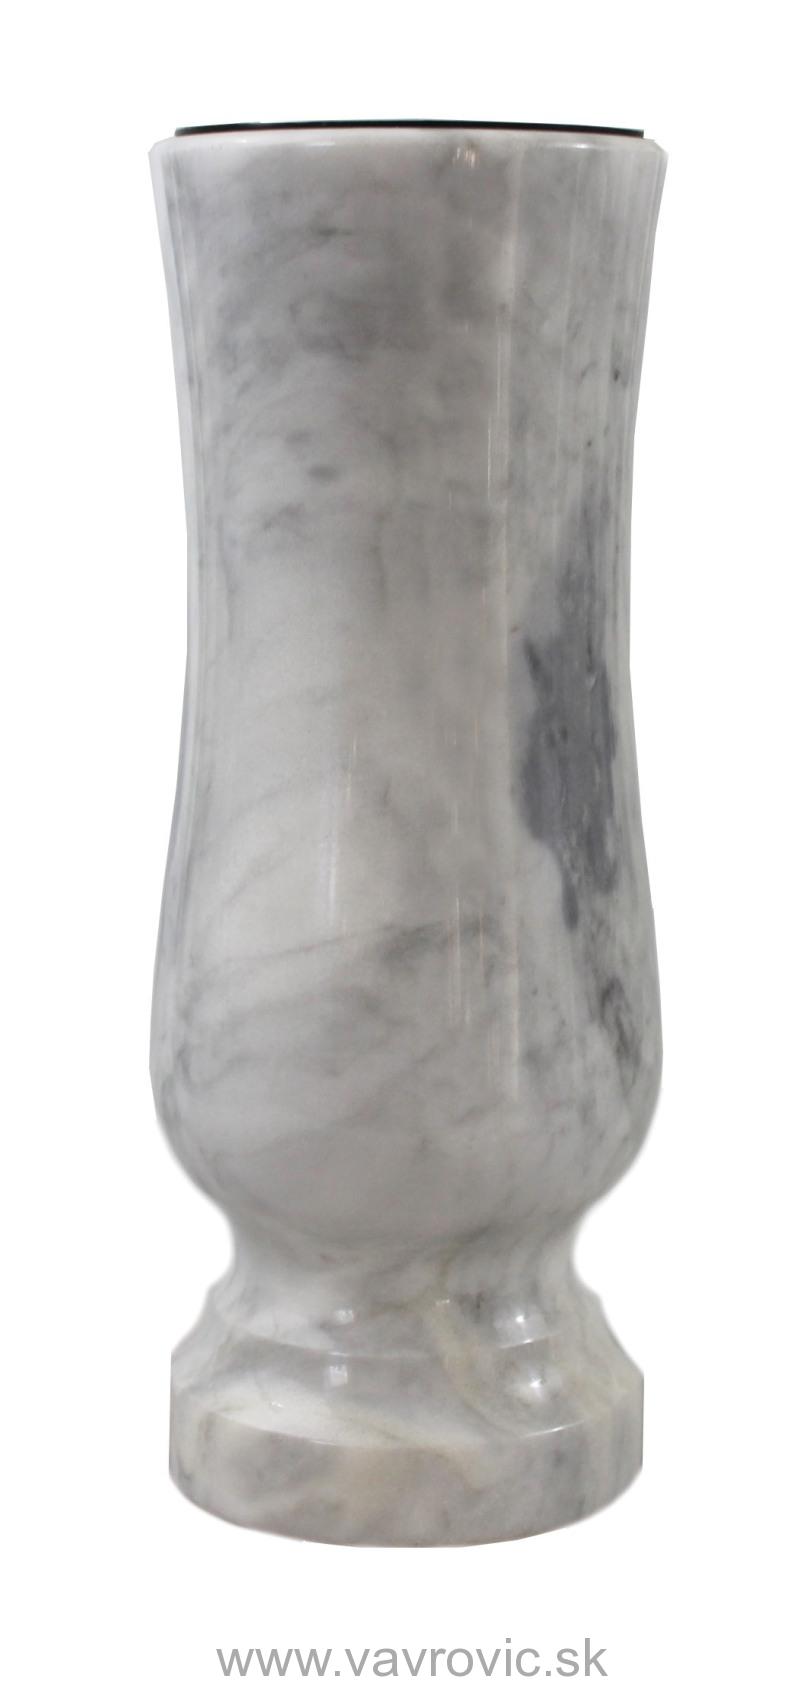 Náhrobná váza - mramor / Carrara